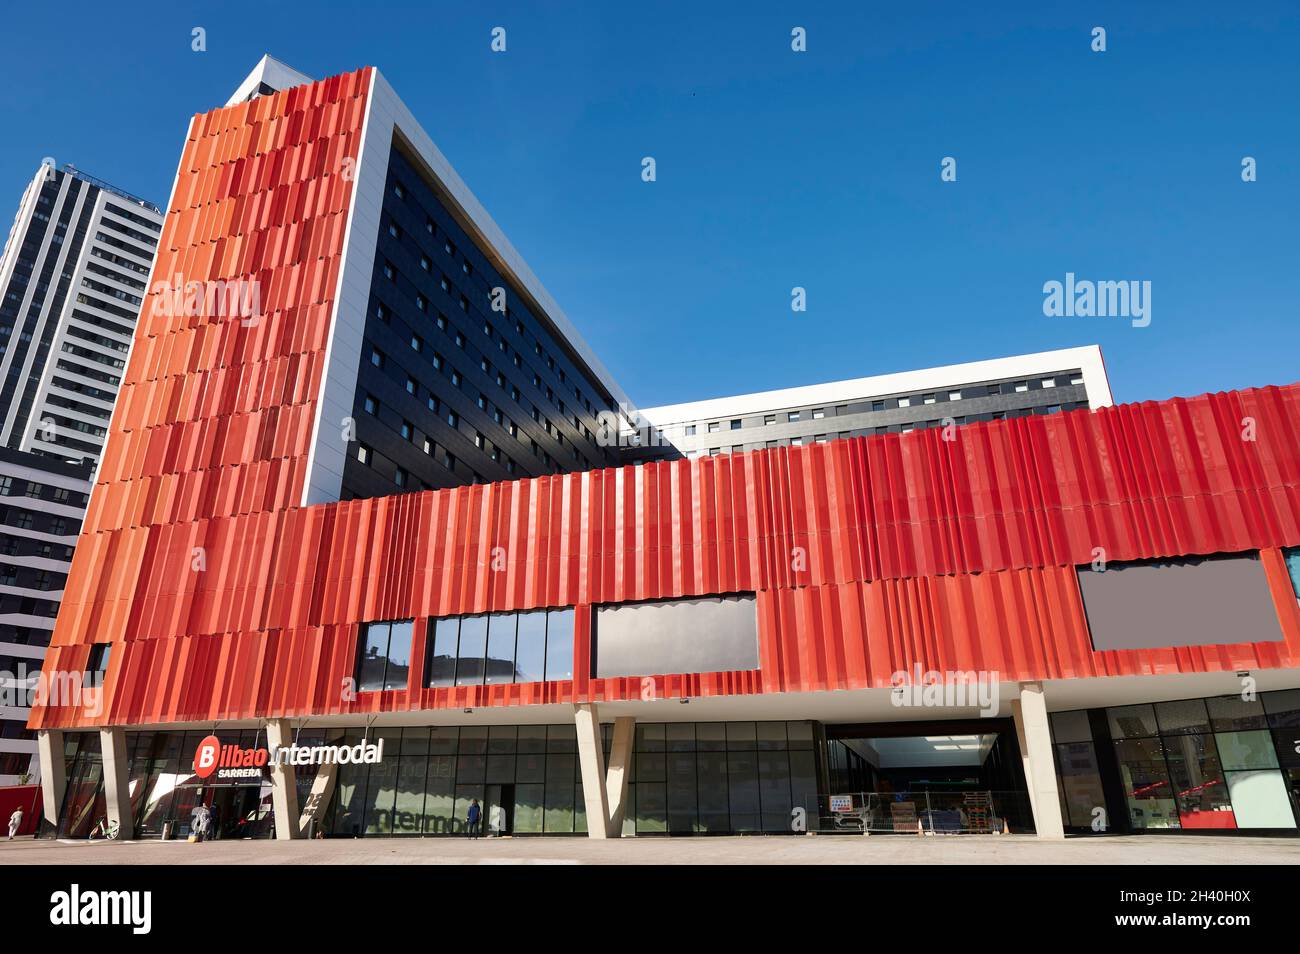 Vue sur le bâtiment du nouveau bus intermodal de Bilbao, Bilbao, Gascogne, pays basque, Espagne,Europe Banque D'Images